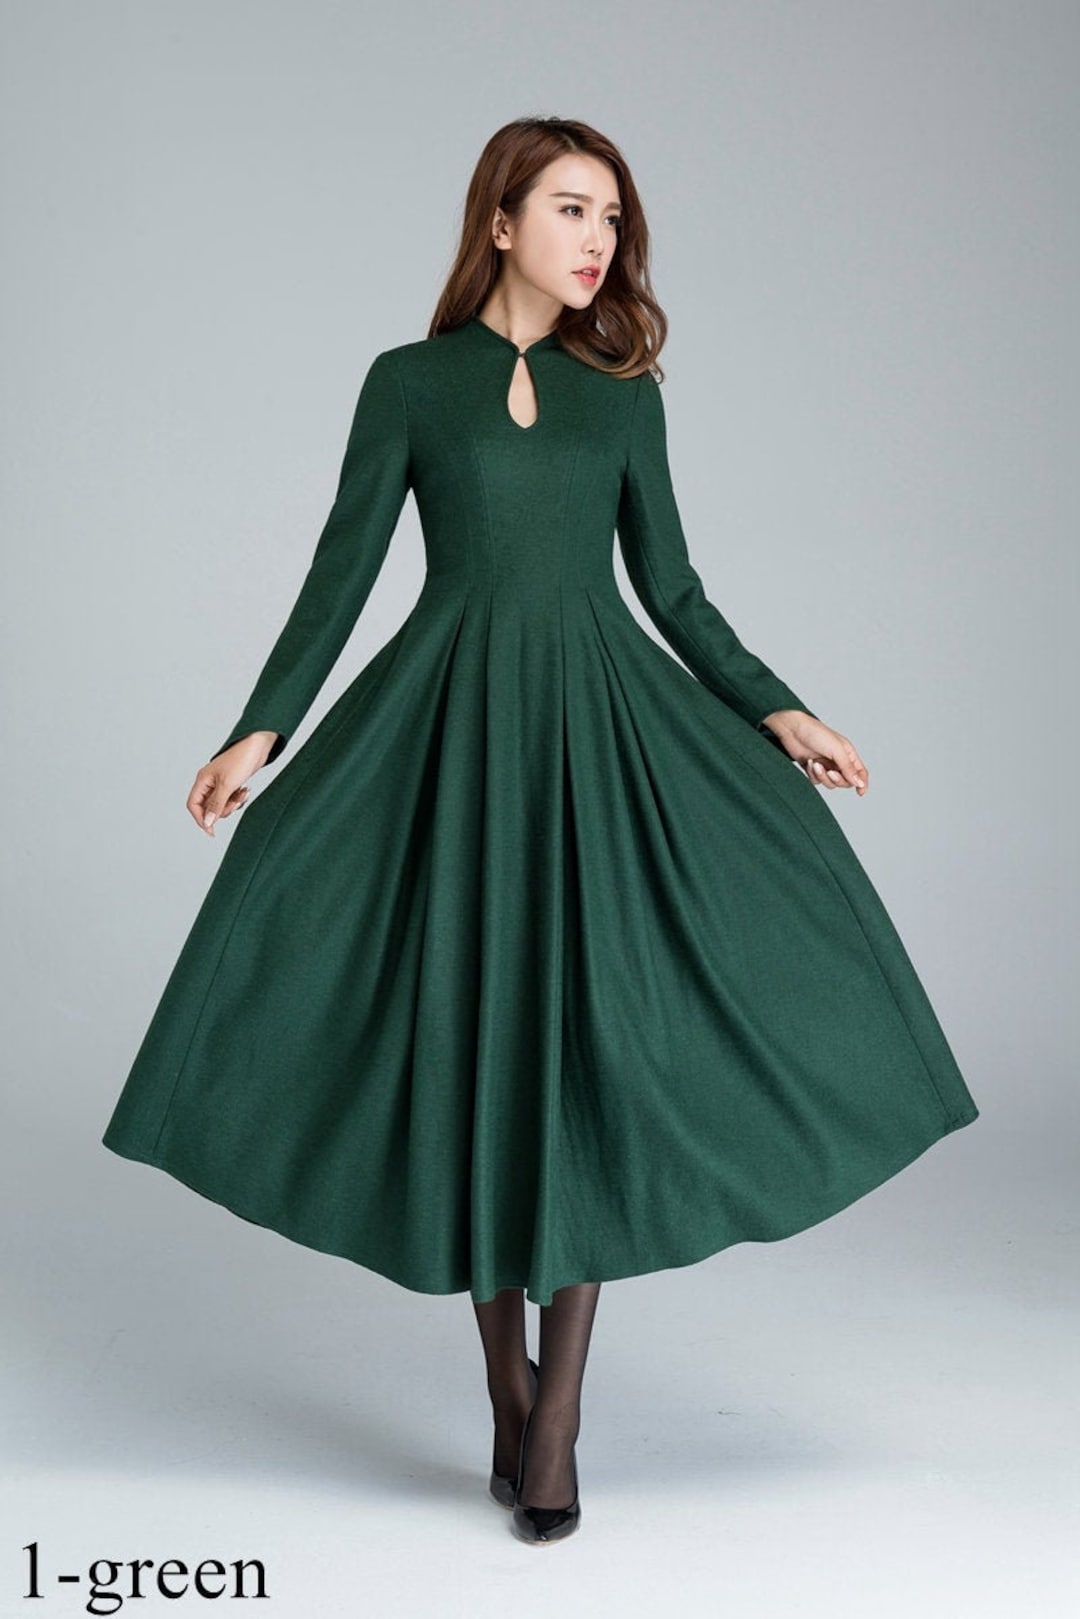 Comprar Mori Girl Otoño Invierno mujer vestido de lana caqui azul verde  vestido de tanque de lana vestido de lana sin mangas grueso vestido cálido